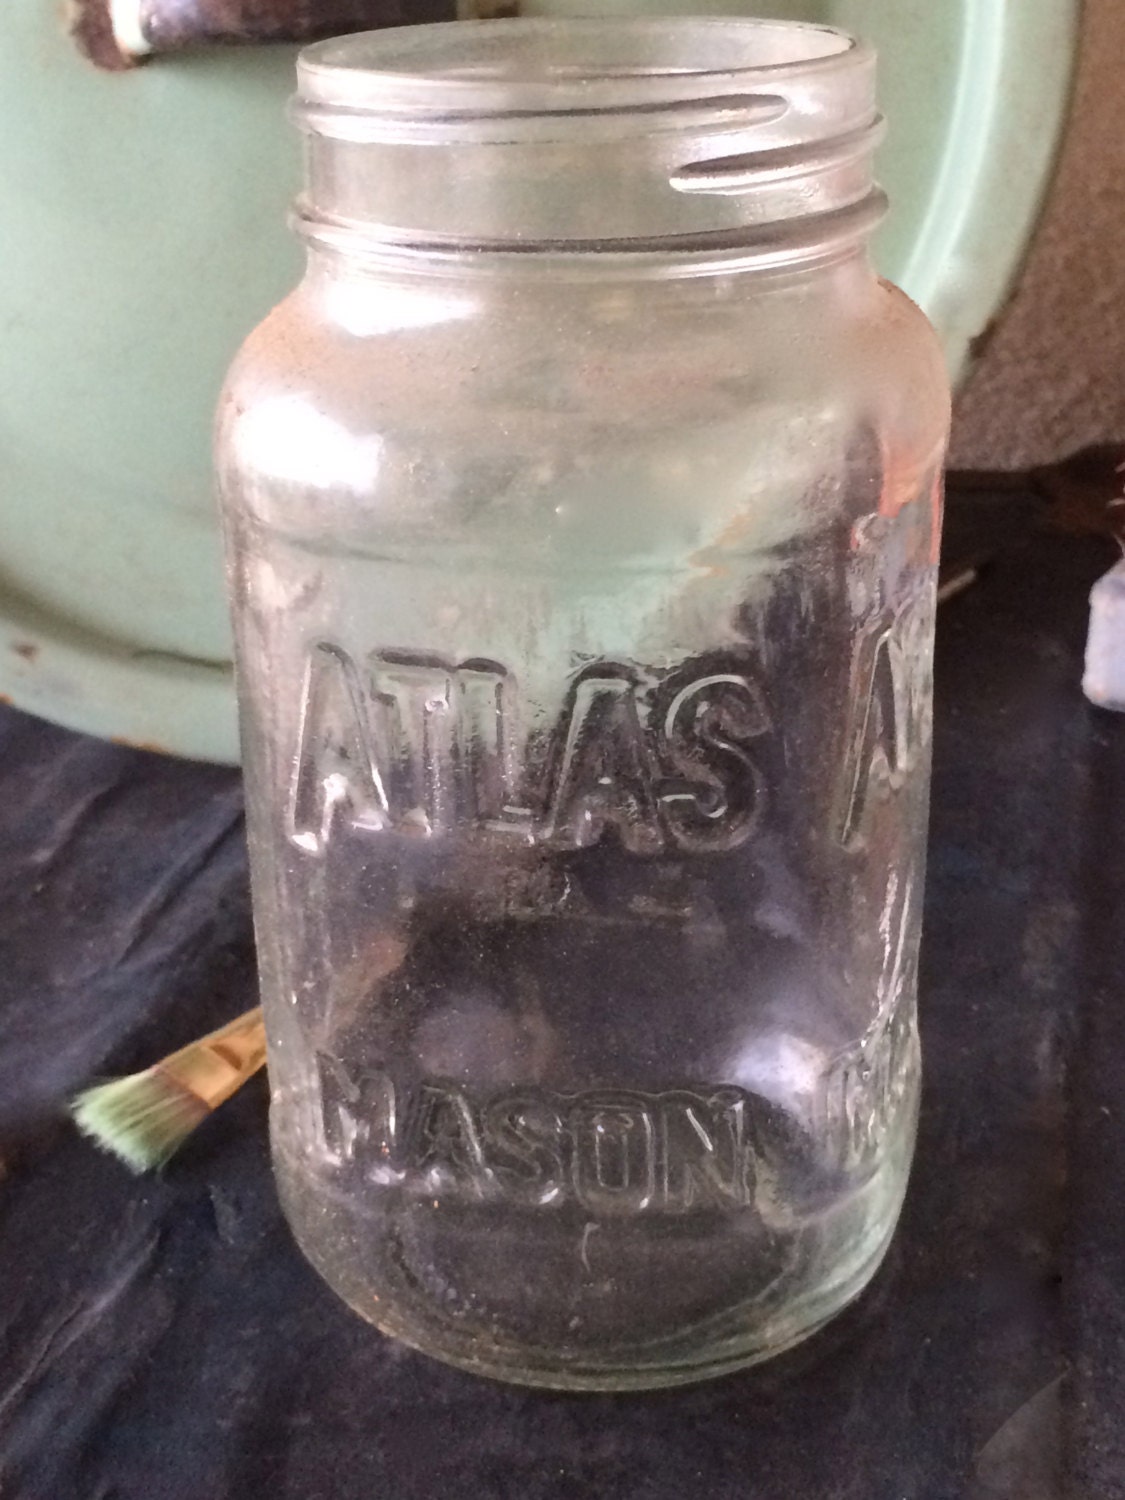 atlas mason jars